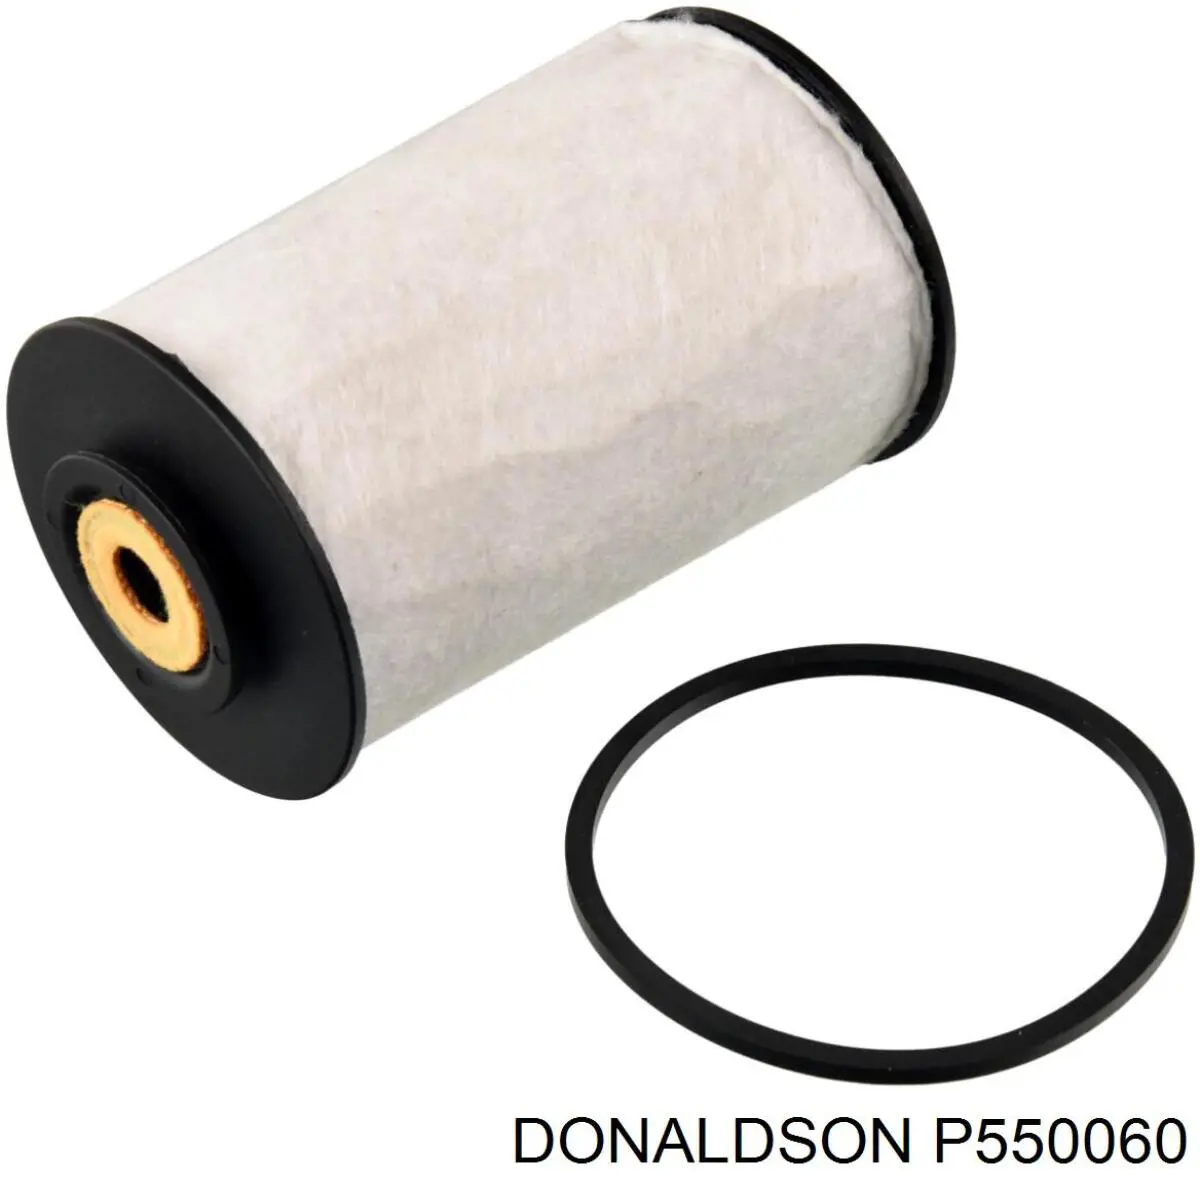 P550060 Donaldson filtro de combustible